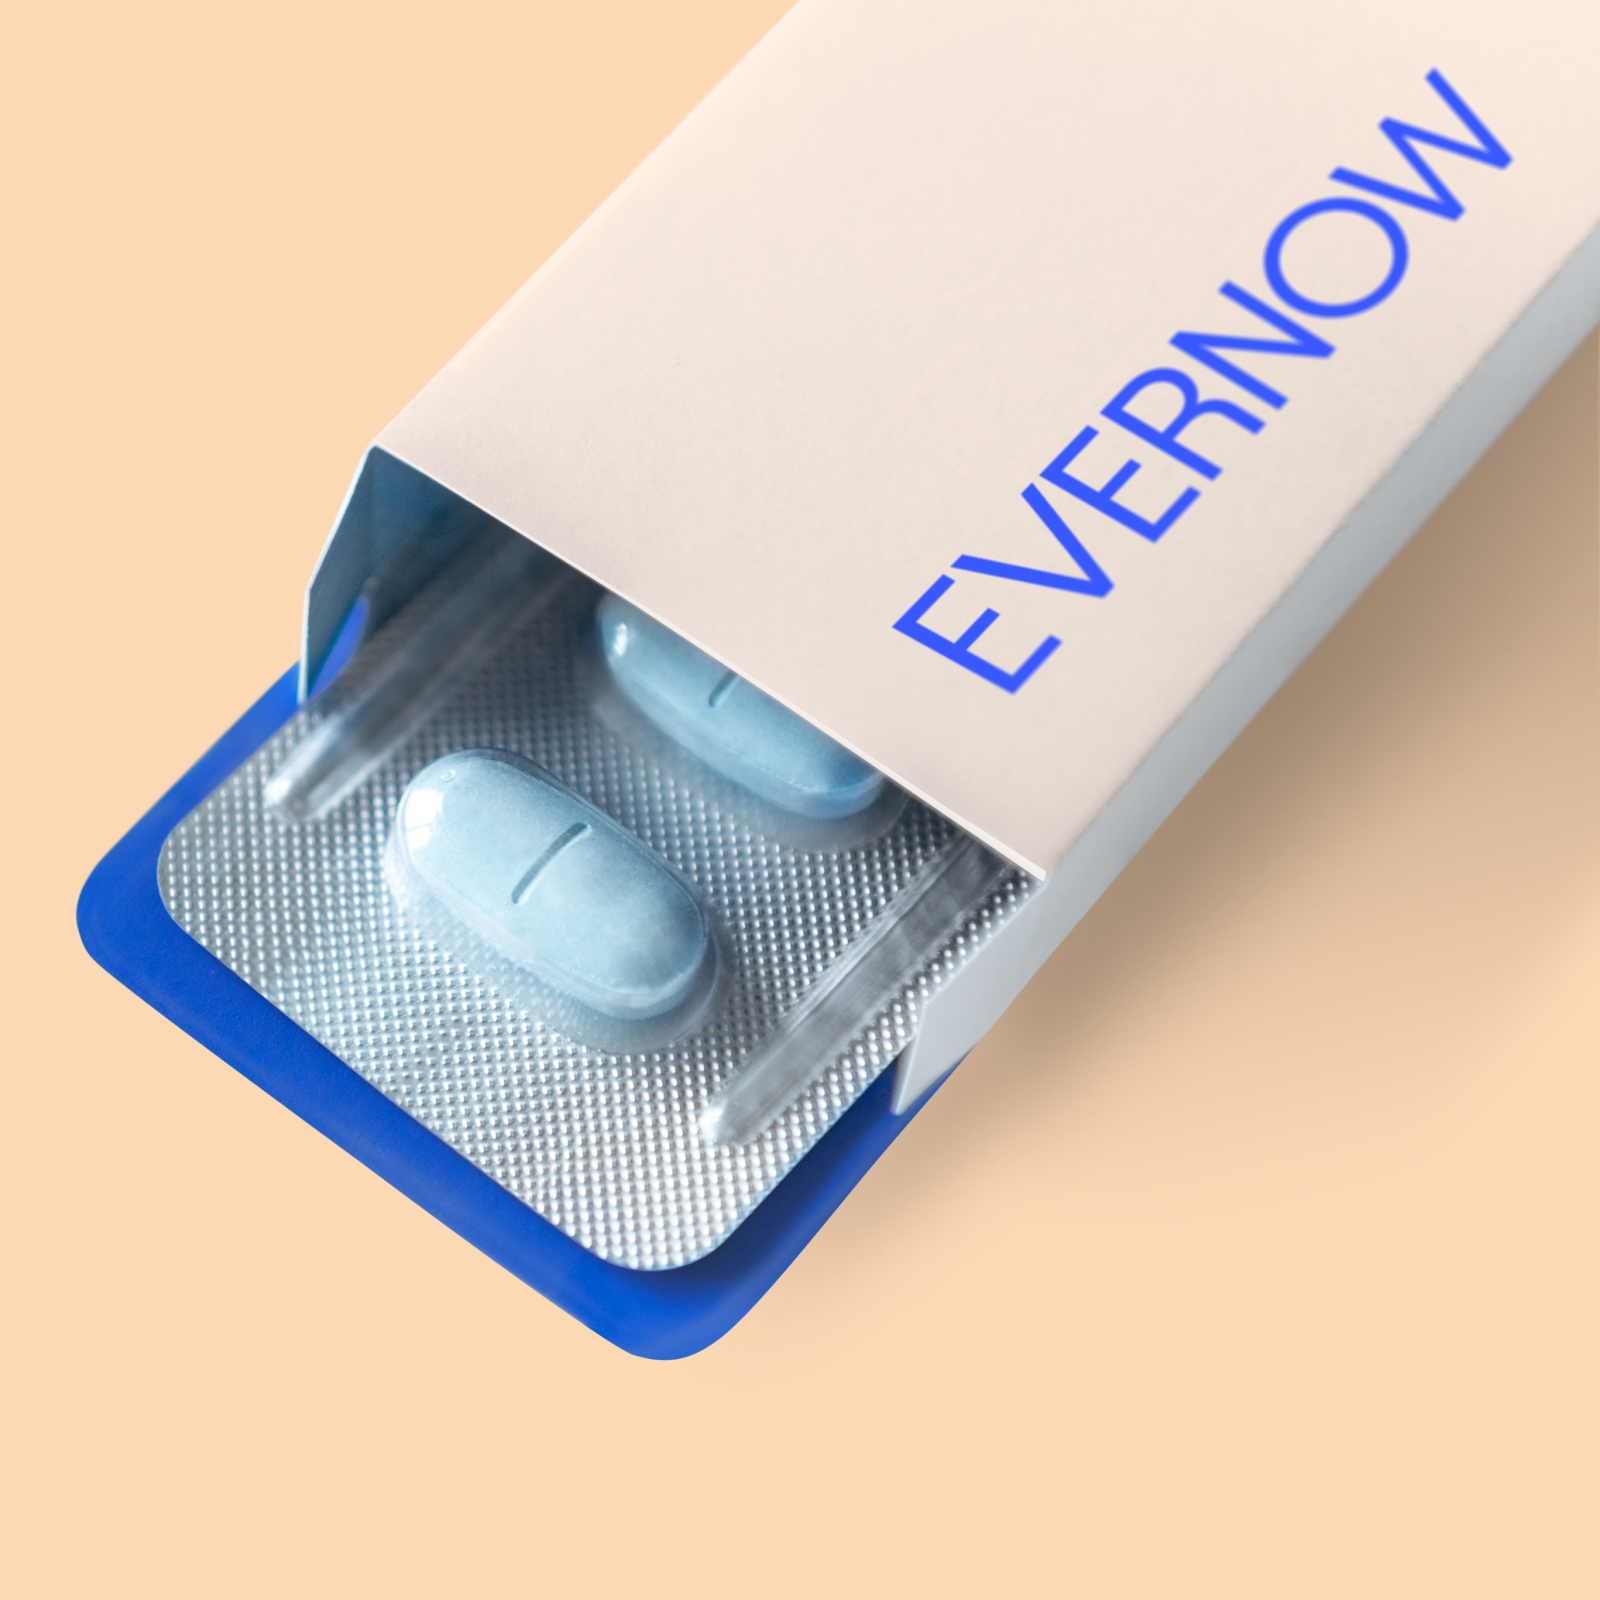 Evernow Reviews Estradiol Pill